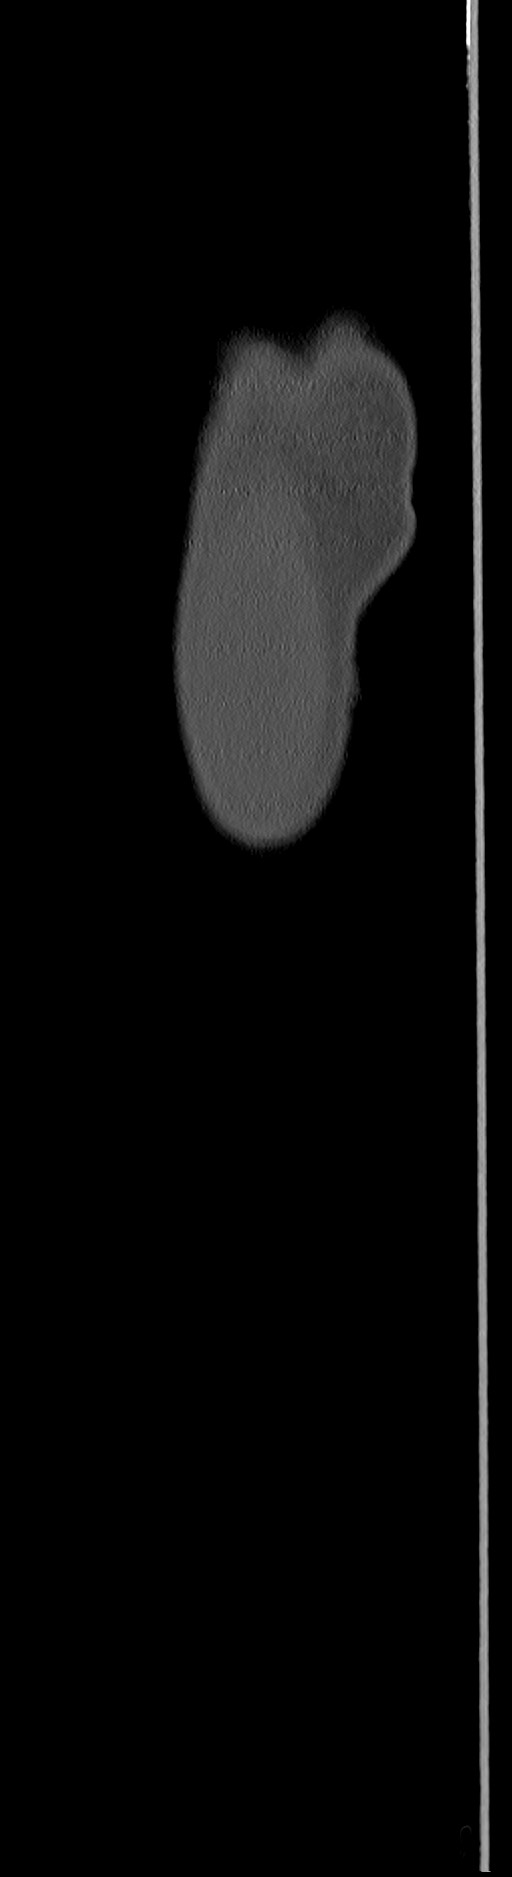 Chronic osteomyelitis (with sequestrum) (Radiopaedia 74813-85822 C 109).jpg